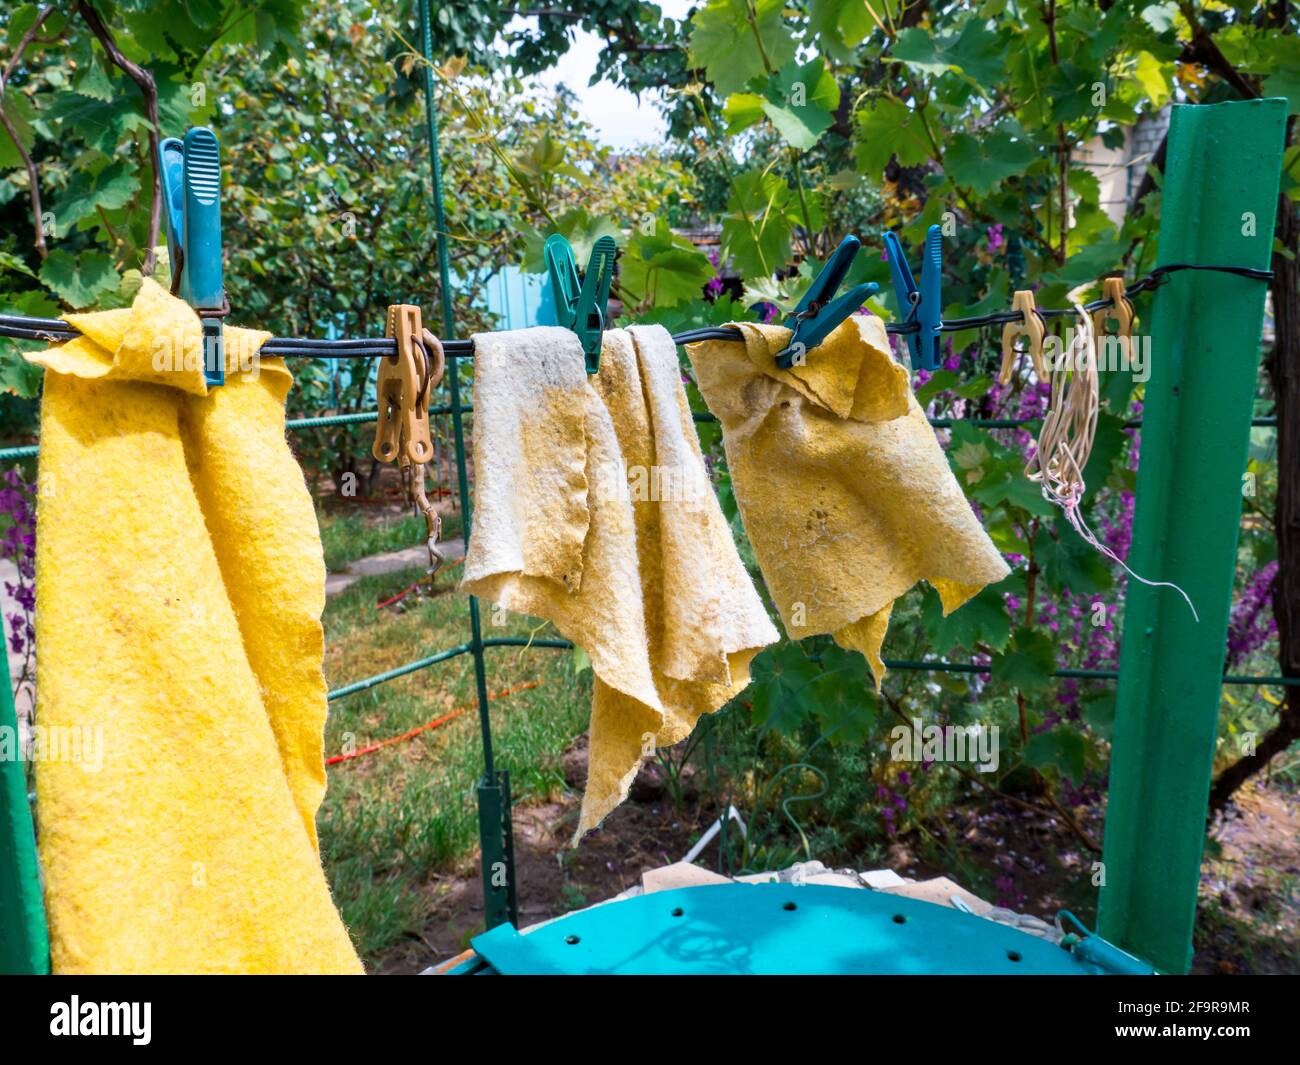 Gelbe nasse Putzlappen trocknen, während sie an einem Draht hängen, der mit Kleidernadeln im Freien auf dem Hof befestigt ist. Ländlicher Hintergrund, einfaches Leben zu Hause Konzept. Stockfoto